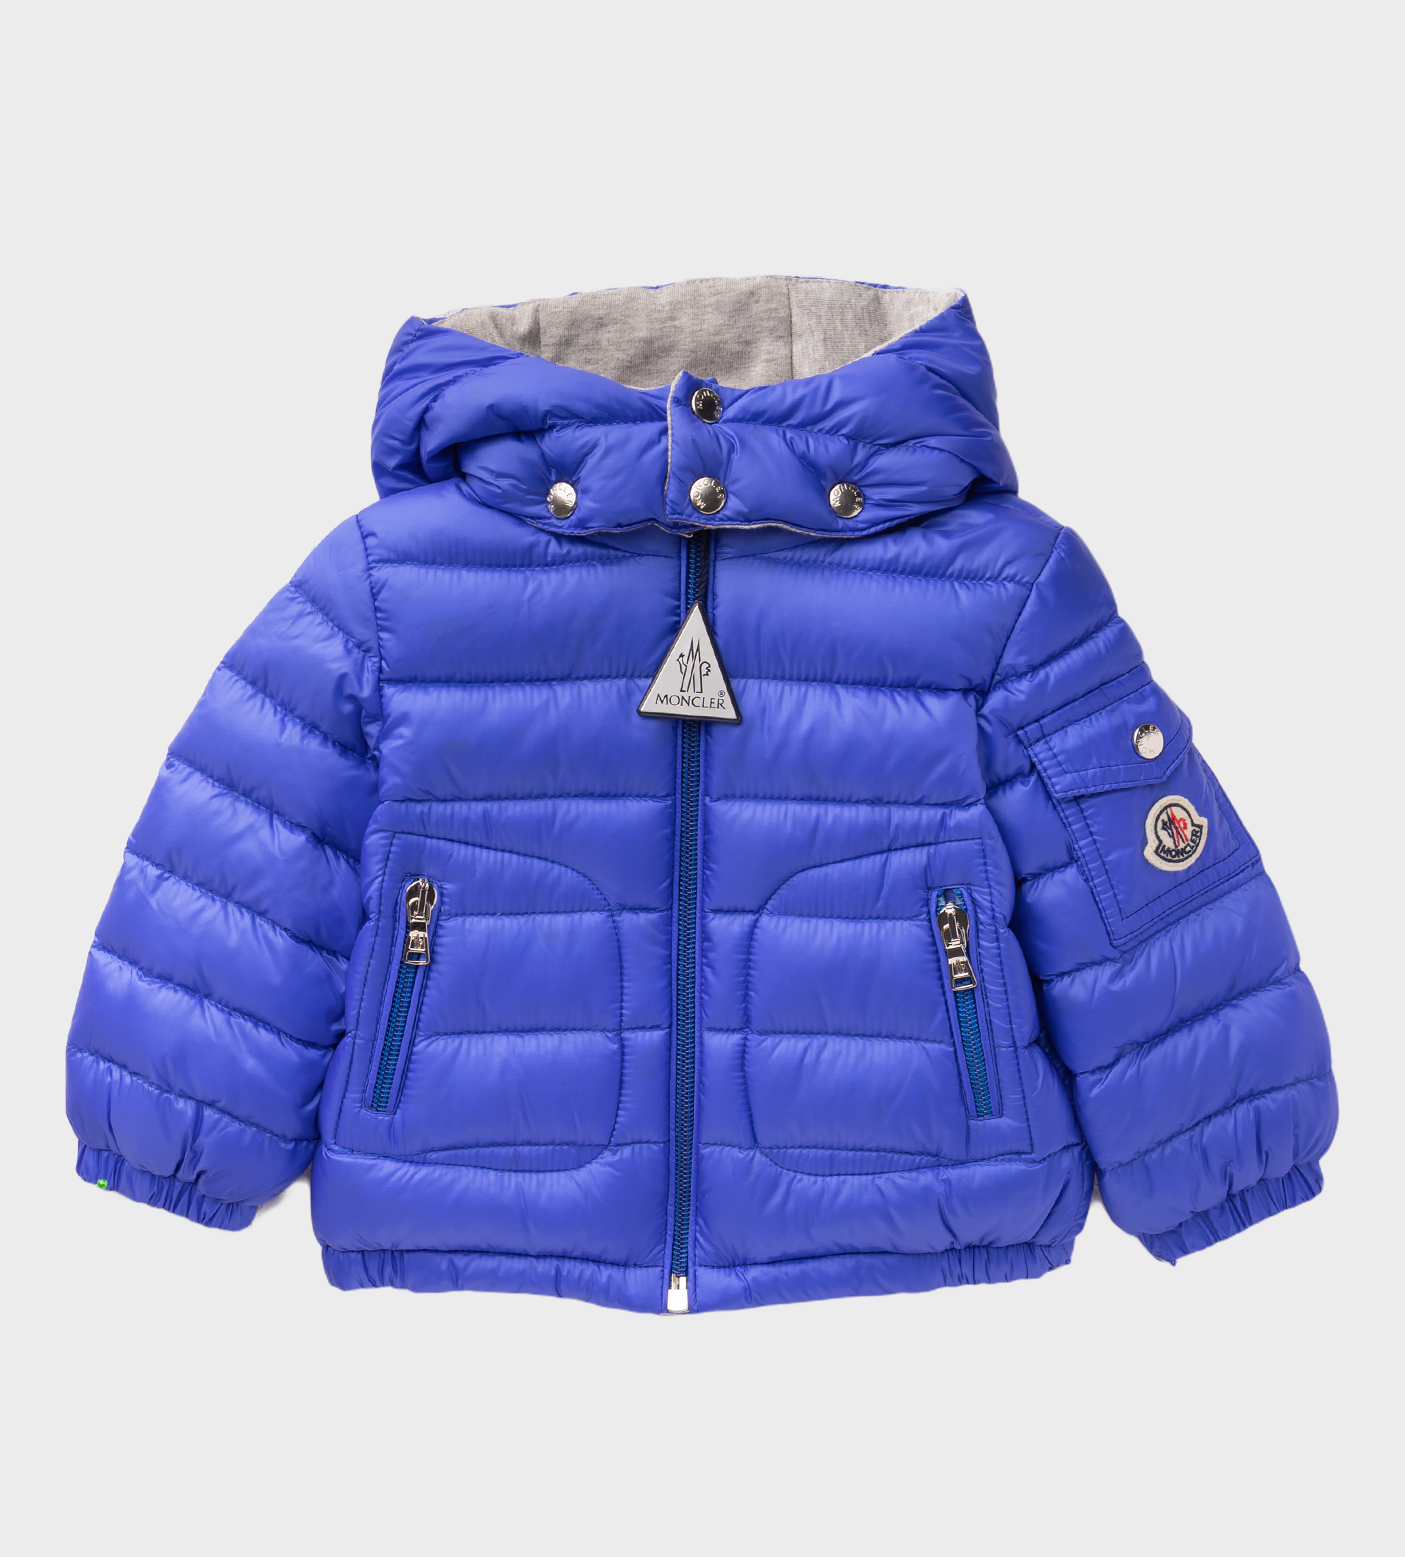 MONCLER Jacket 951 - 1A00003 - 53048 Blue - Azzurro Kids | Kids fashion